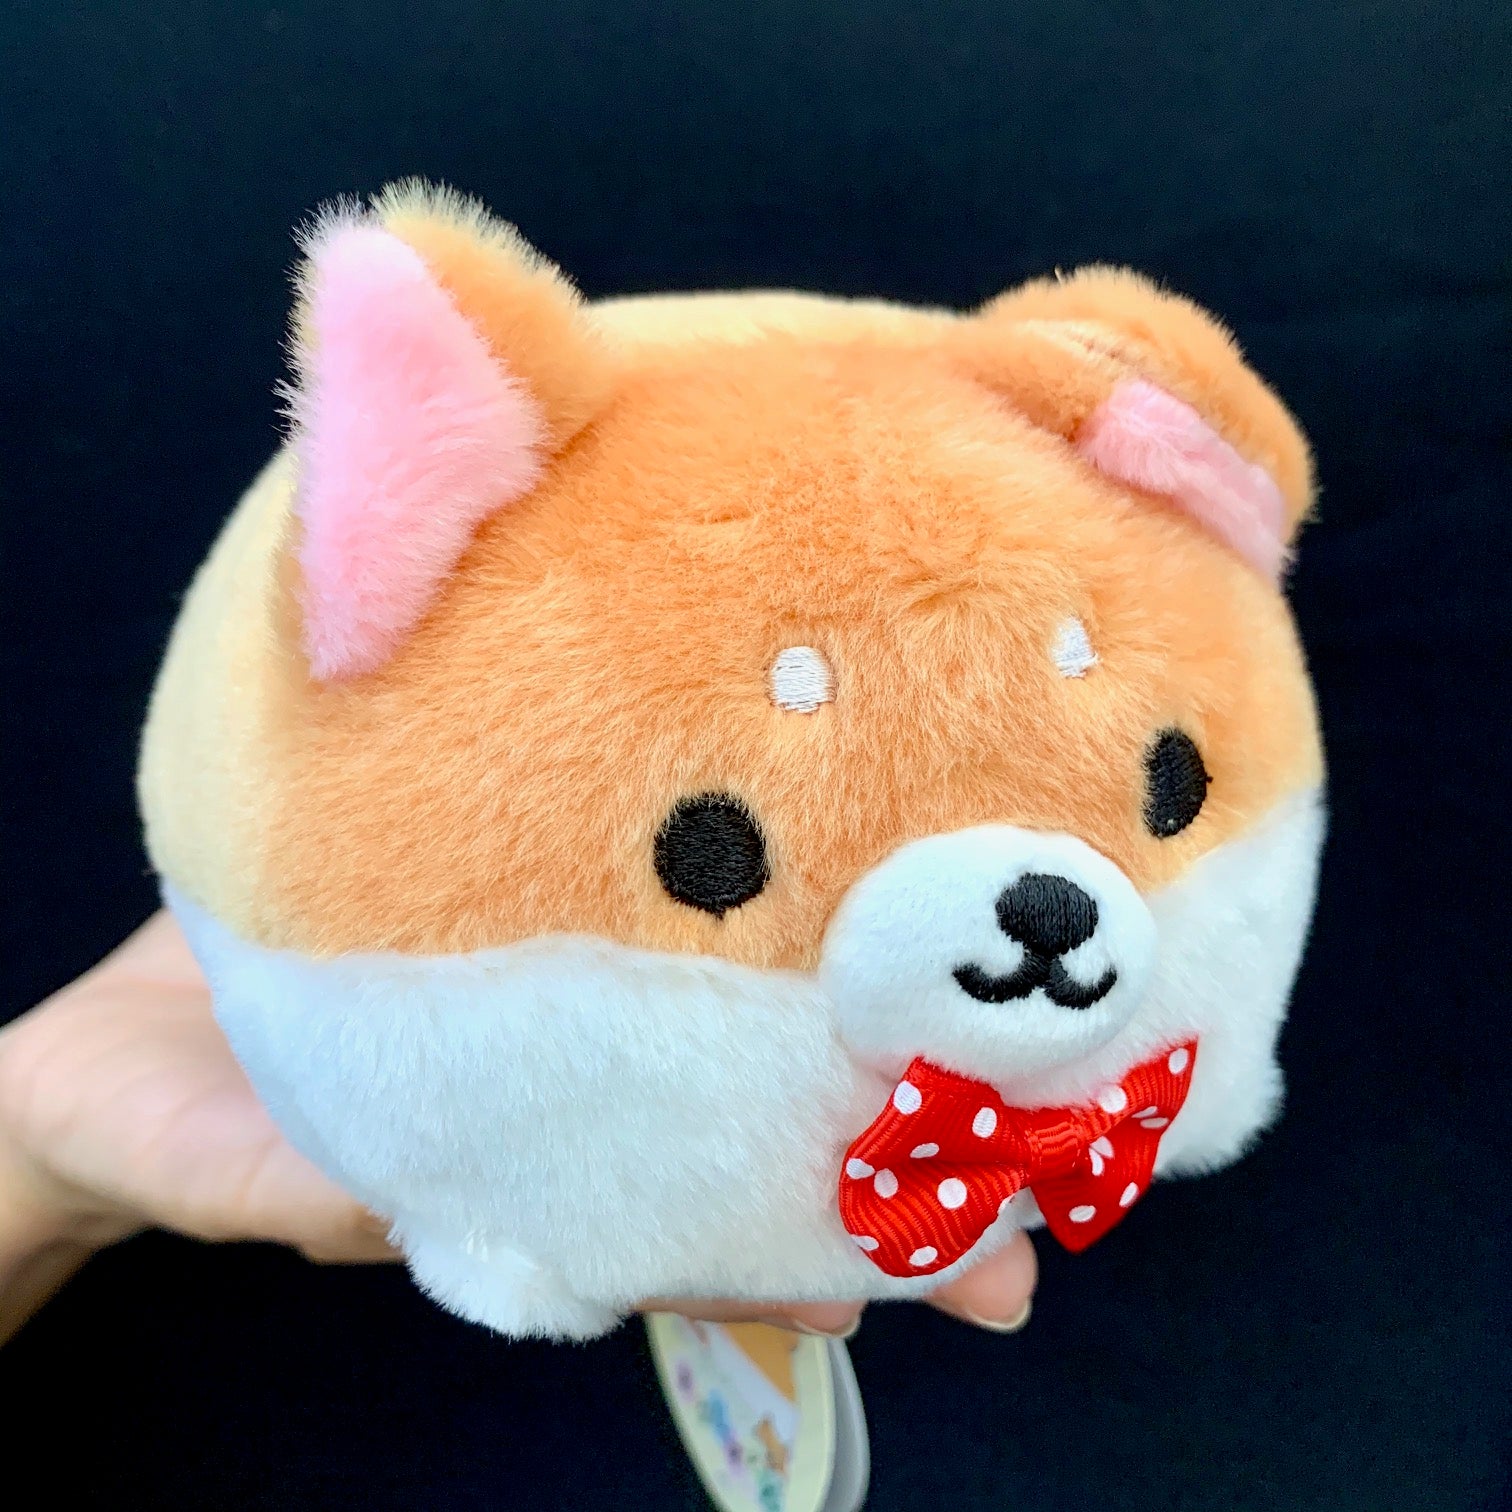 Corgi Dog Plush Toy – Big Squishies